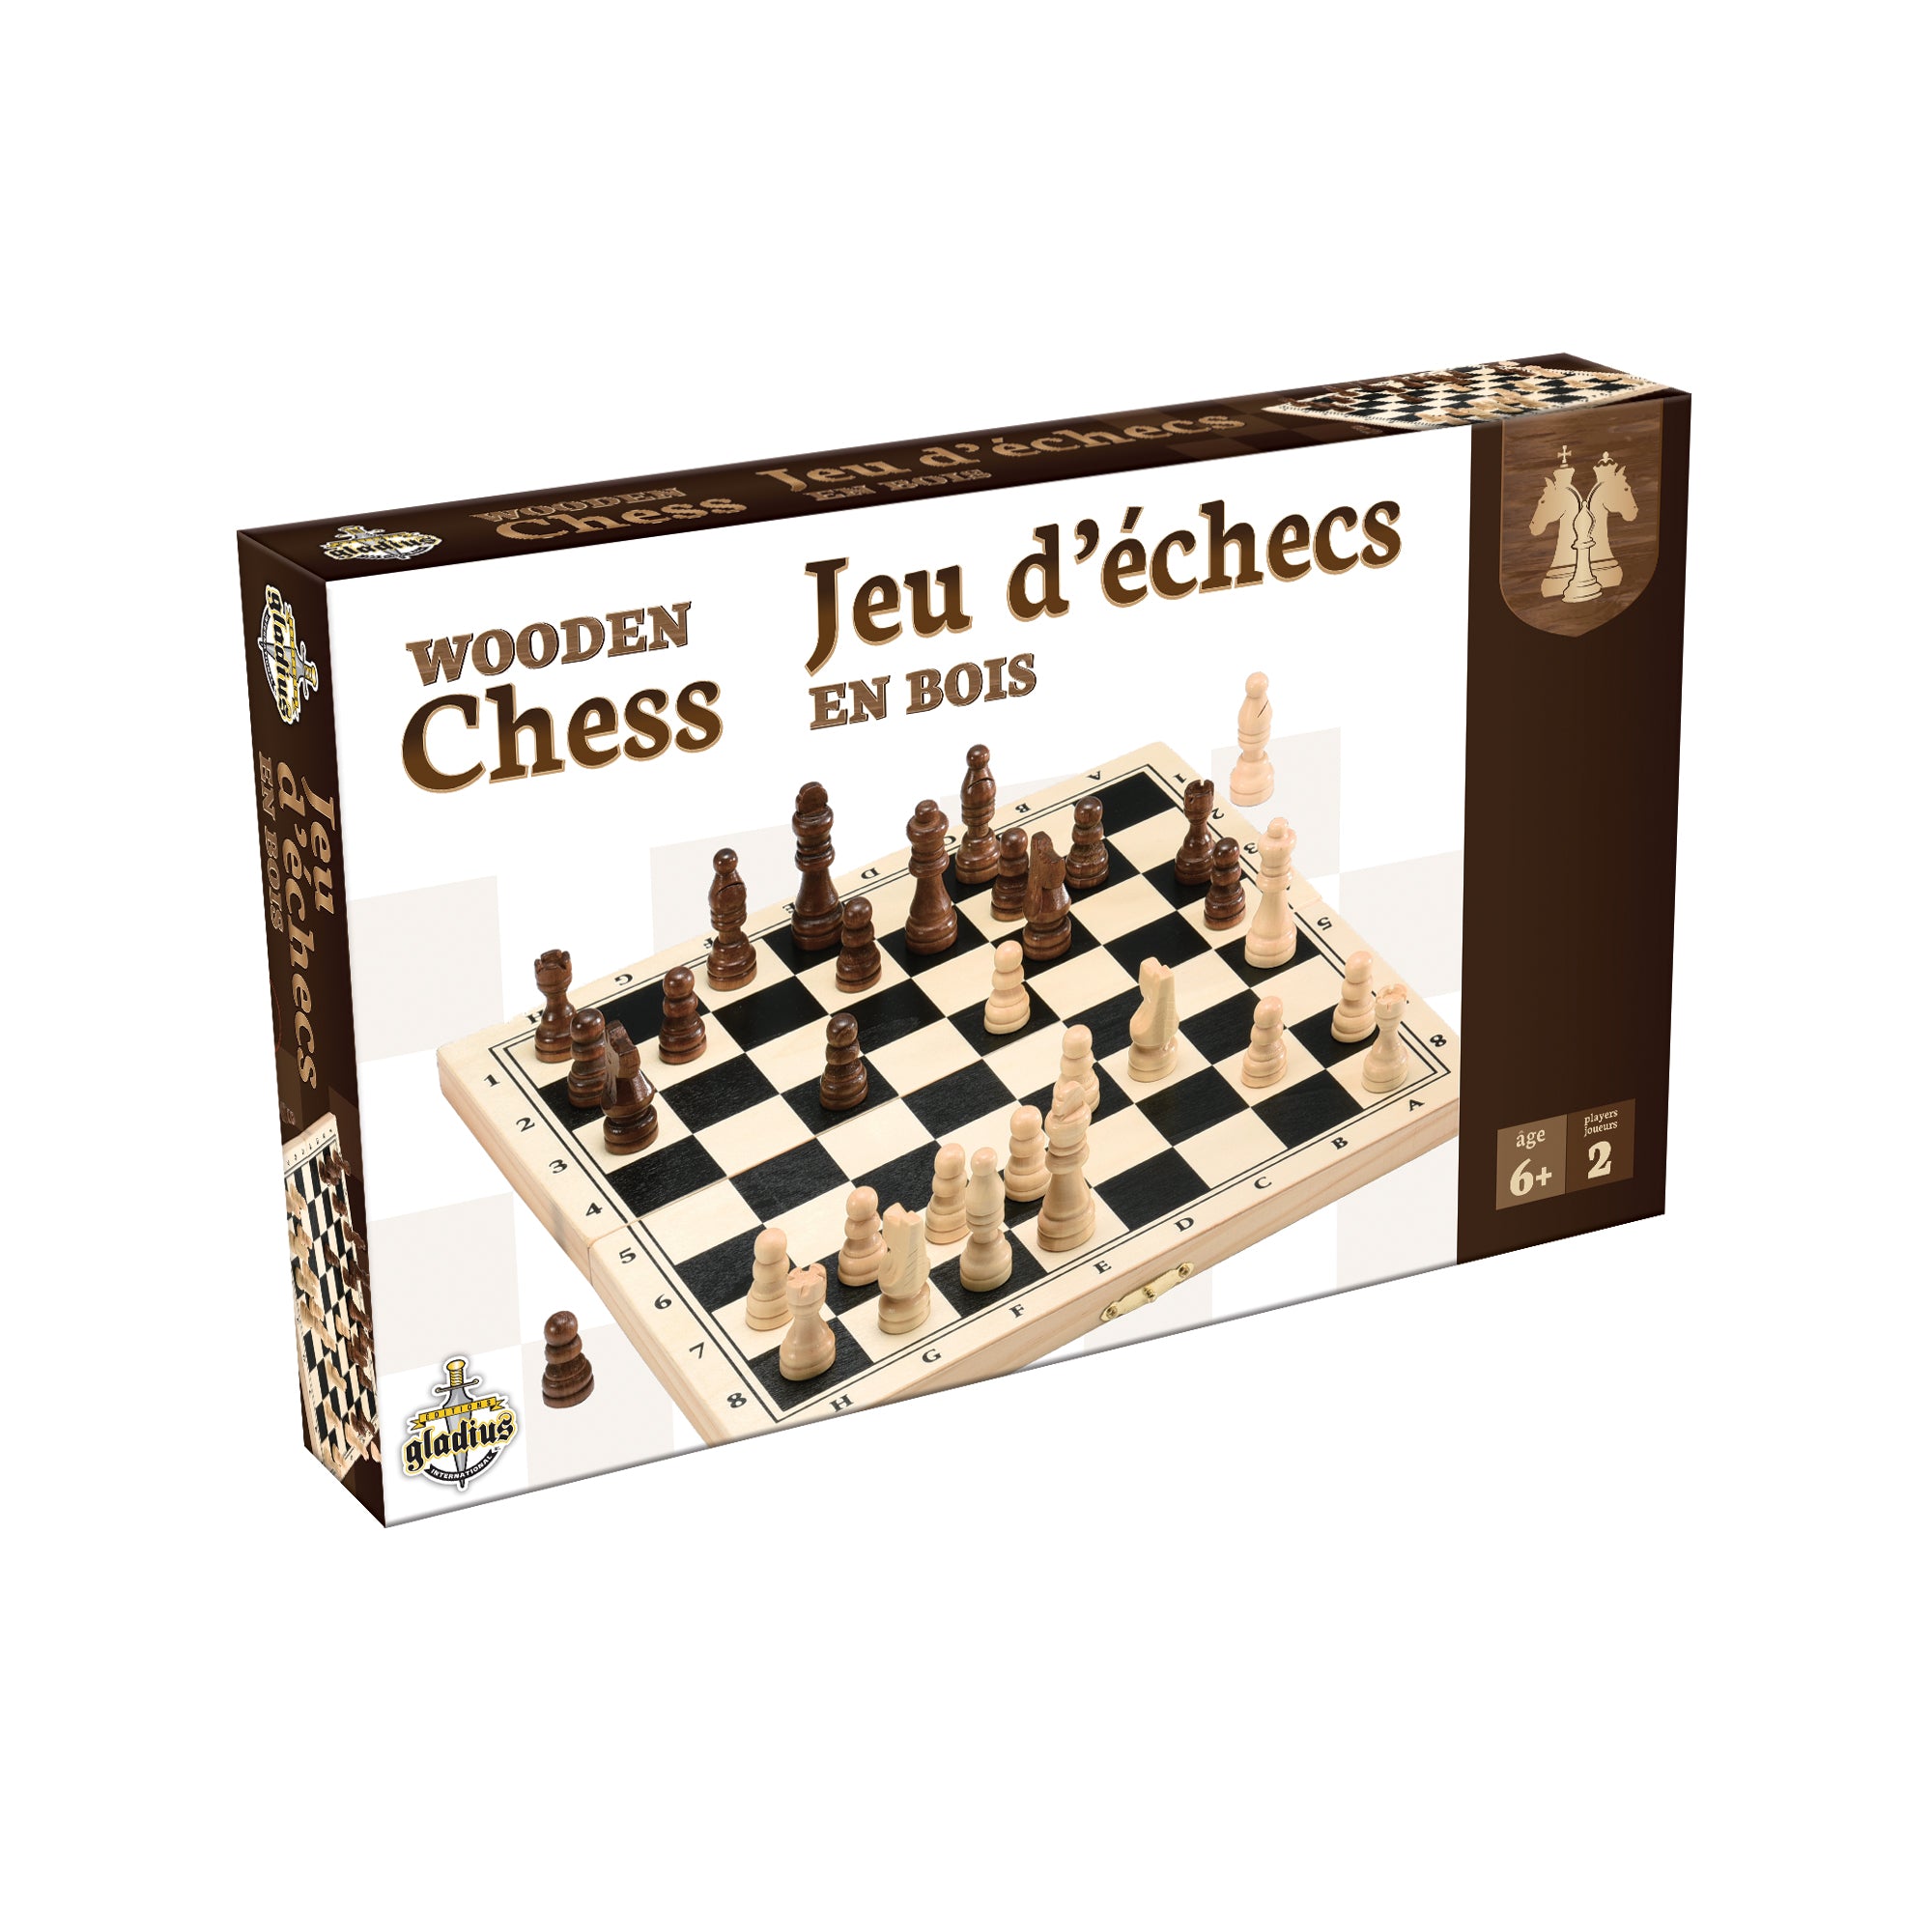 Jeux d'échecs en ligne gratuit sans inscription